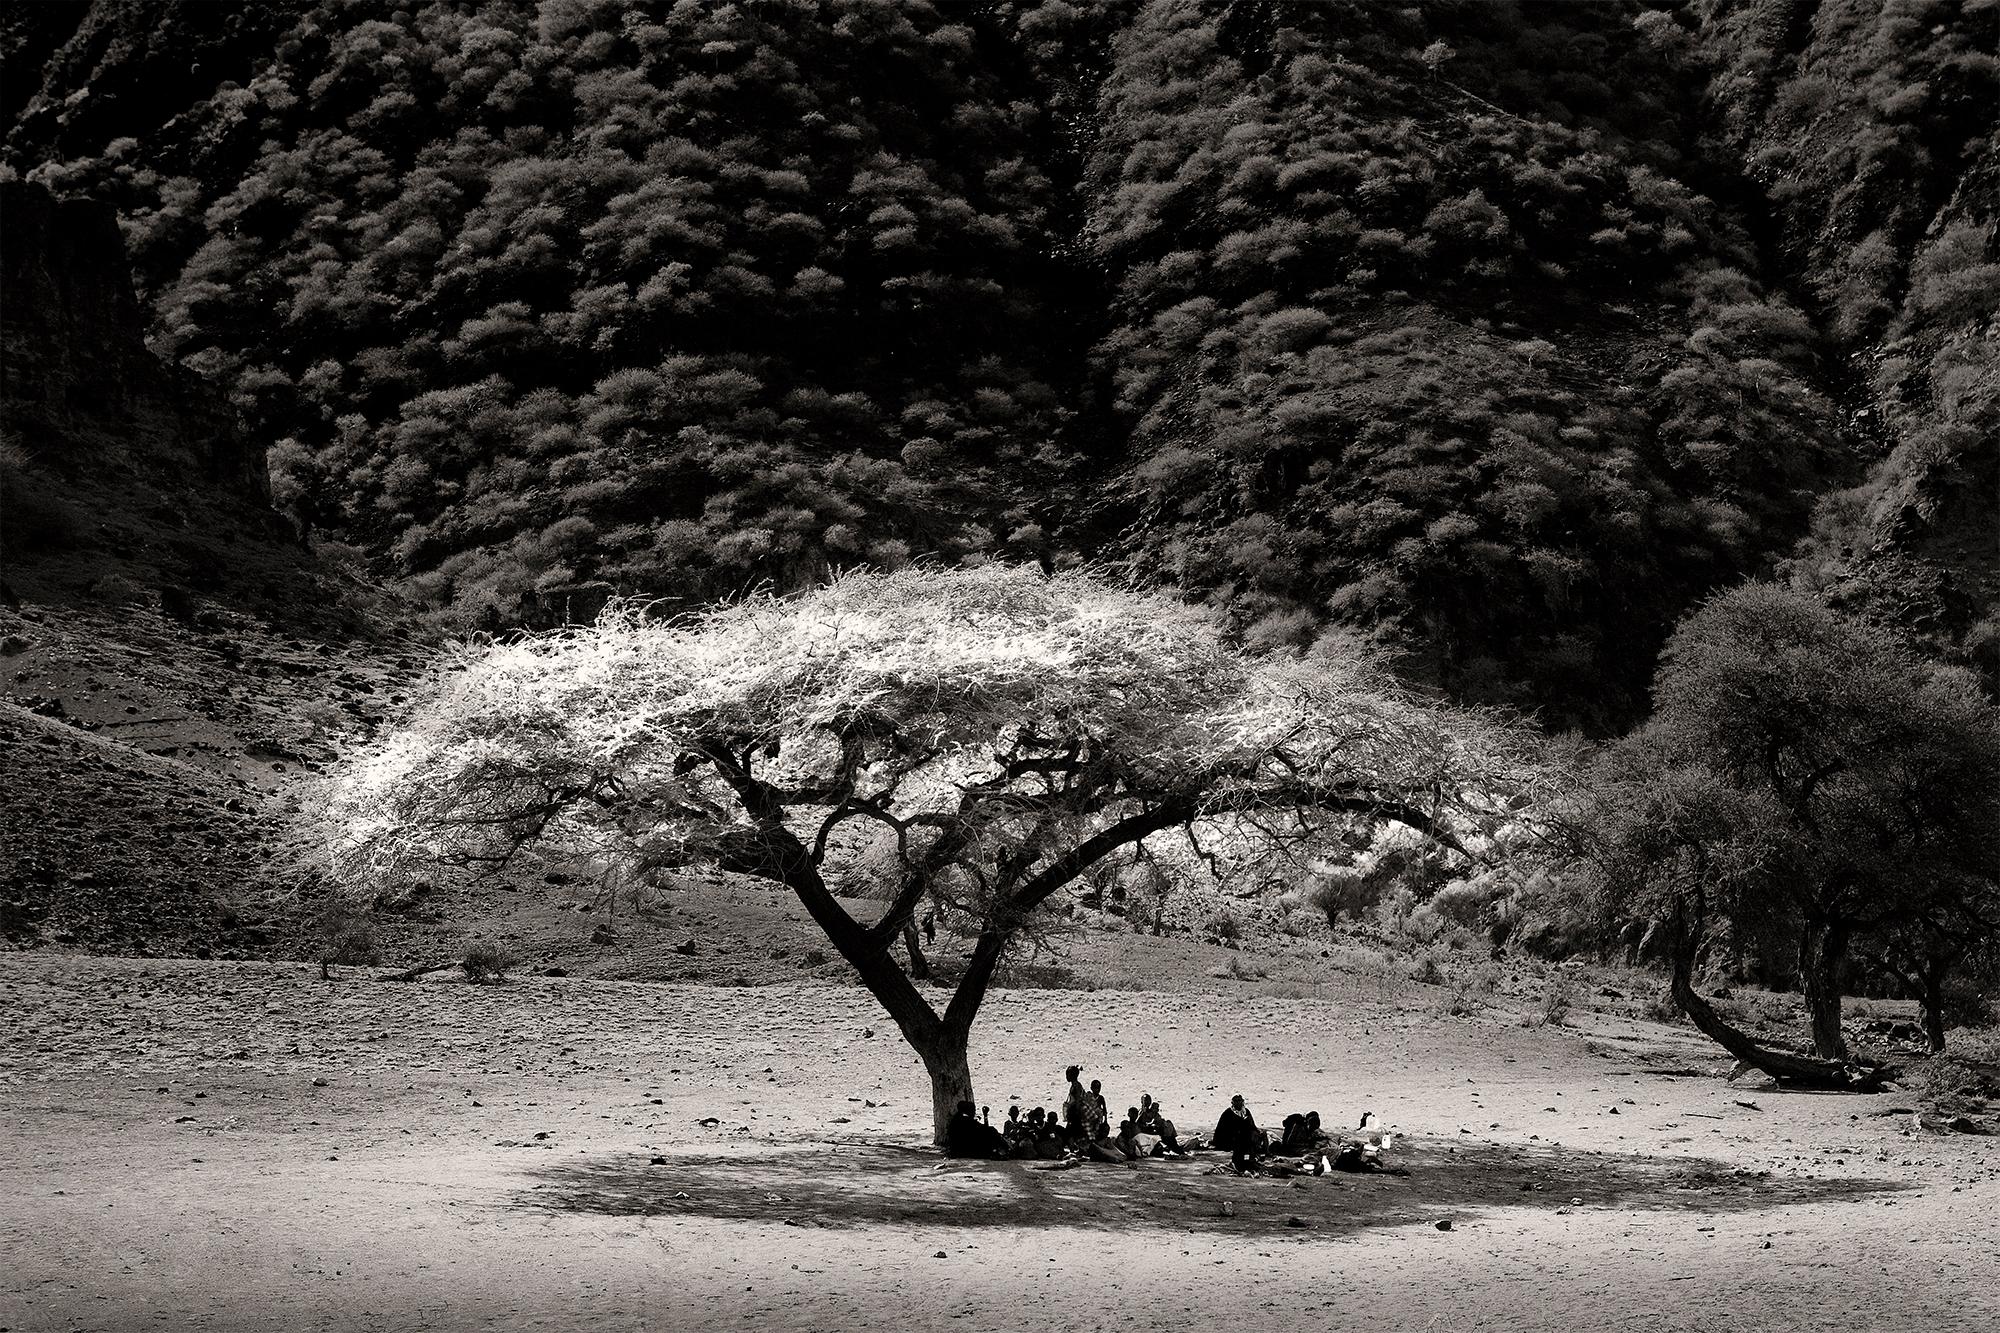 Black and White Photograph Joachim Schmeisser - Midday in Rift Valley, Afrique, personnes, photographies en noir et blanc, famille